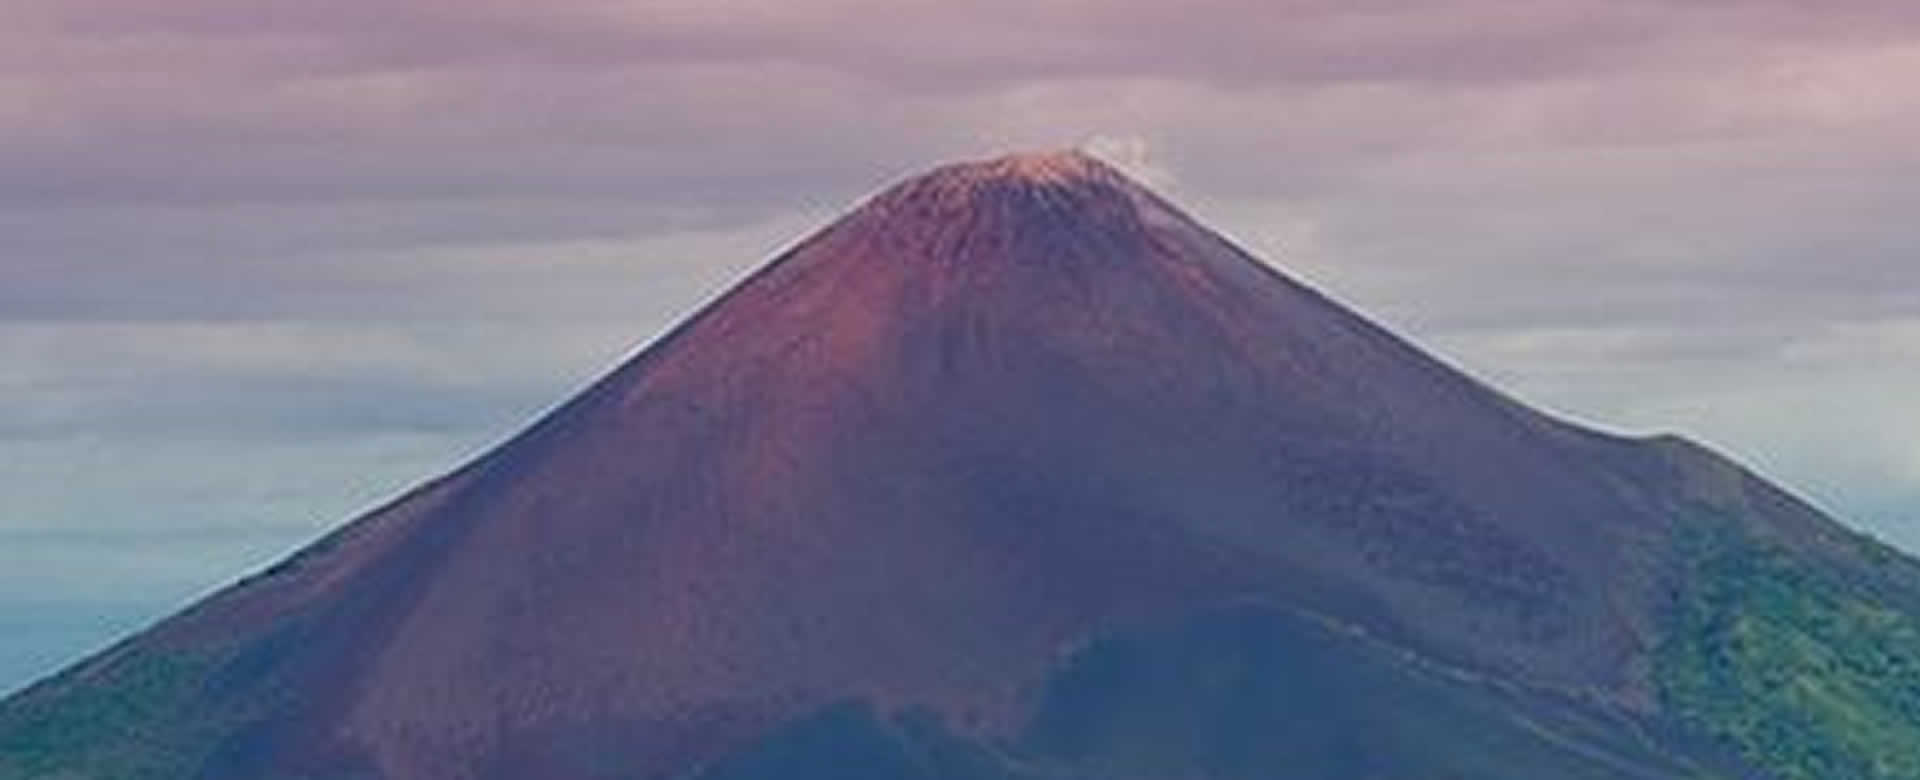 INETER informa sobre emisión de gases en el Volcán Momotombo